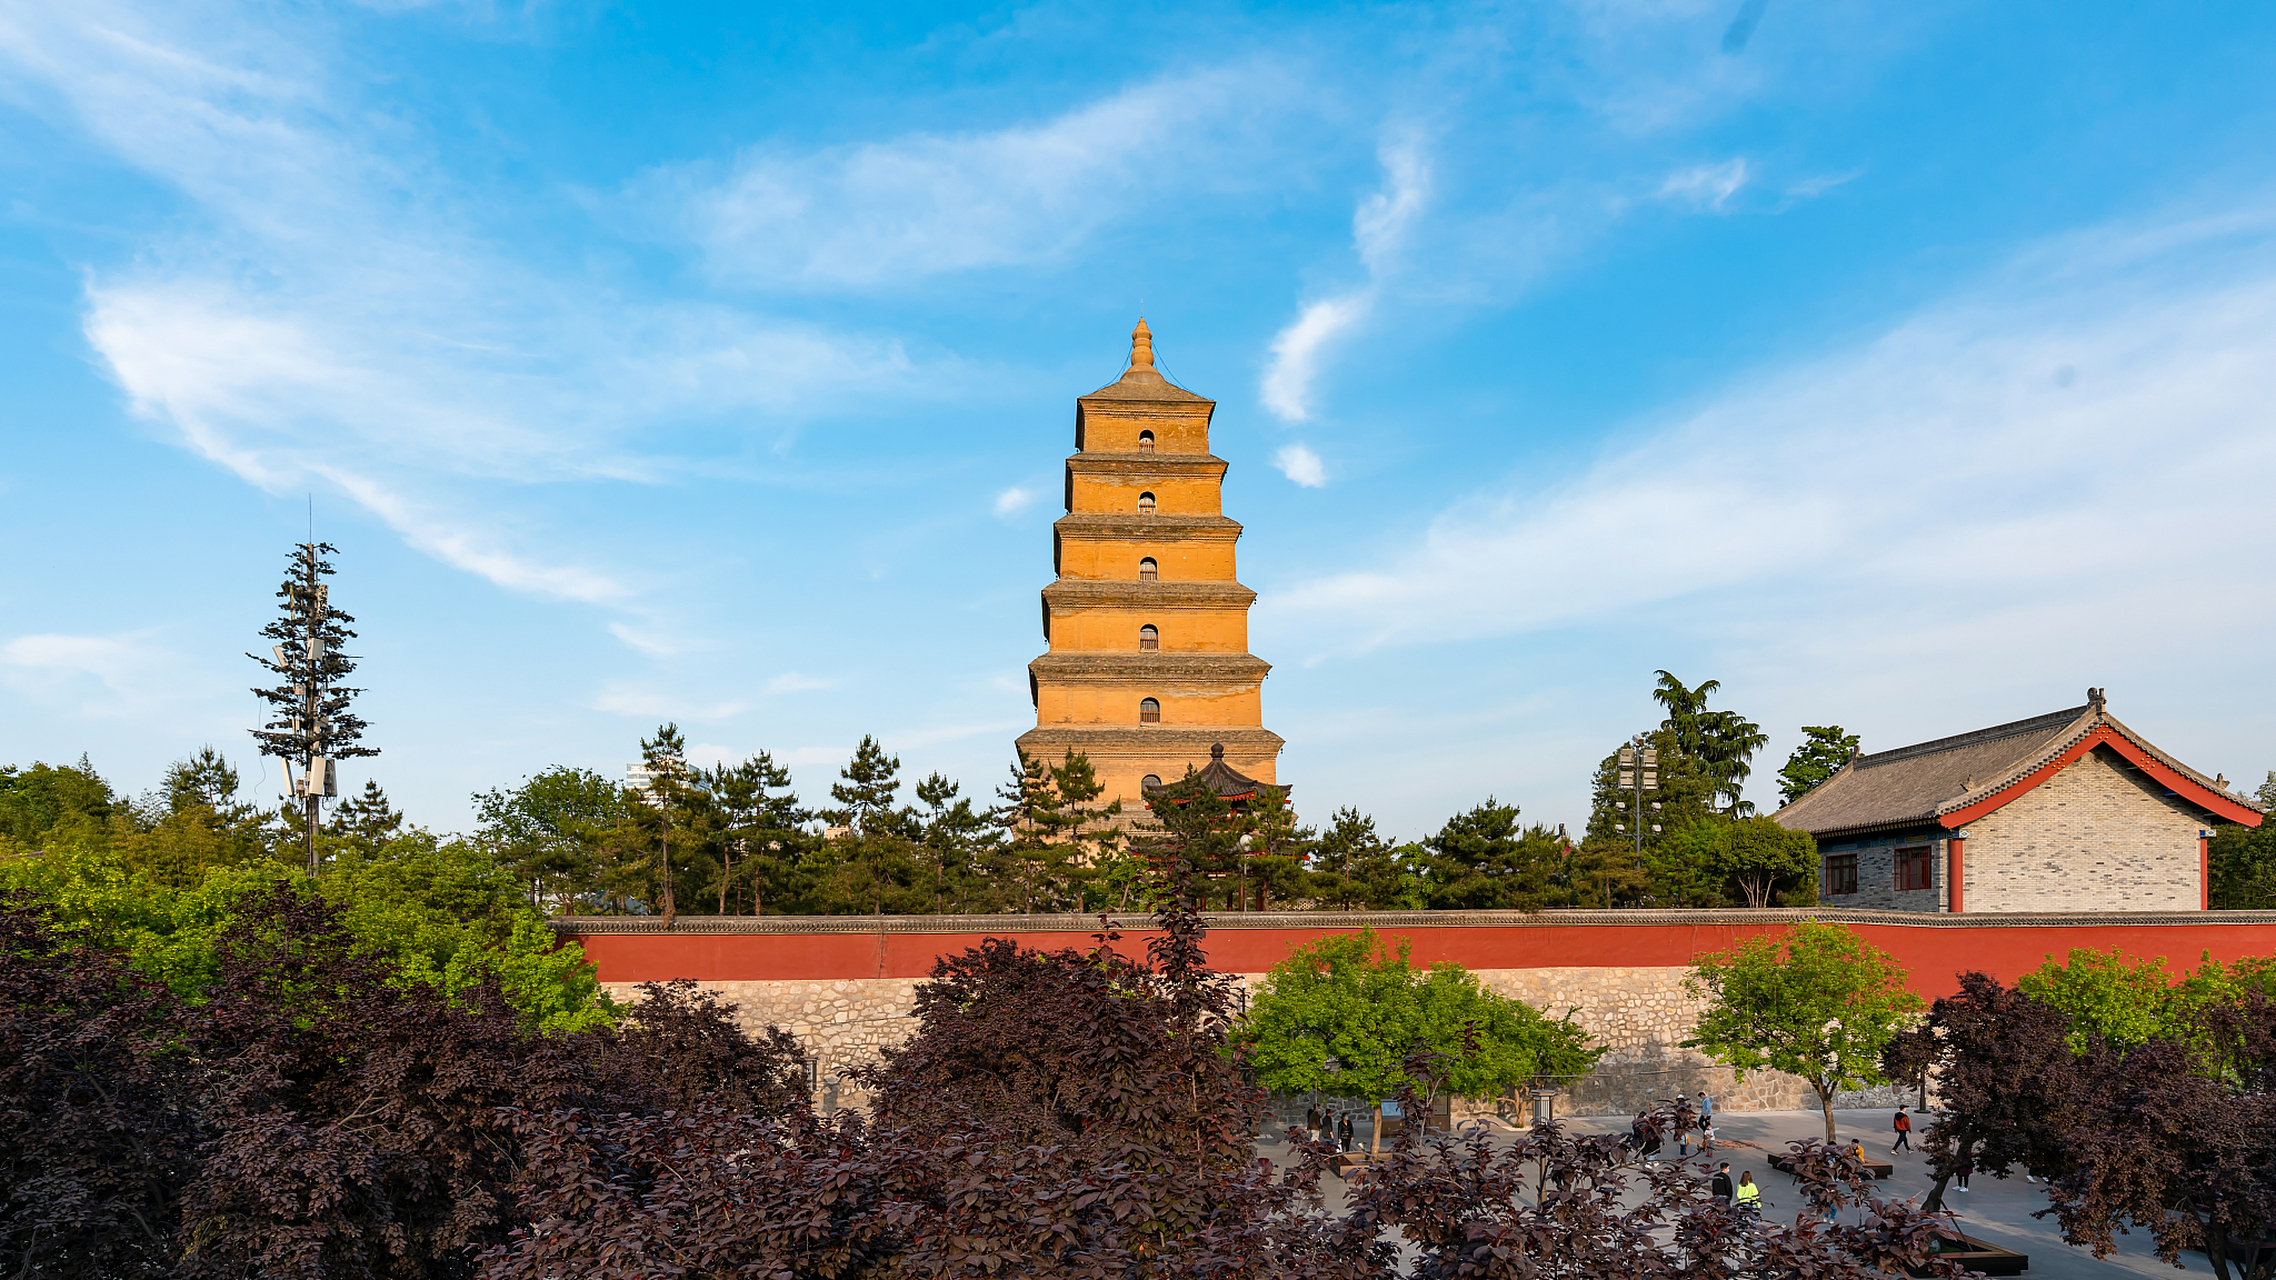 大雁塔作为现存最早,规模最大的唐代四方楼阁式砖塔,是古都西安和陕西